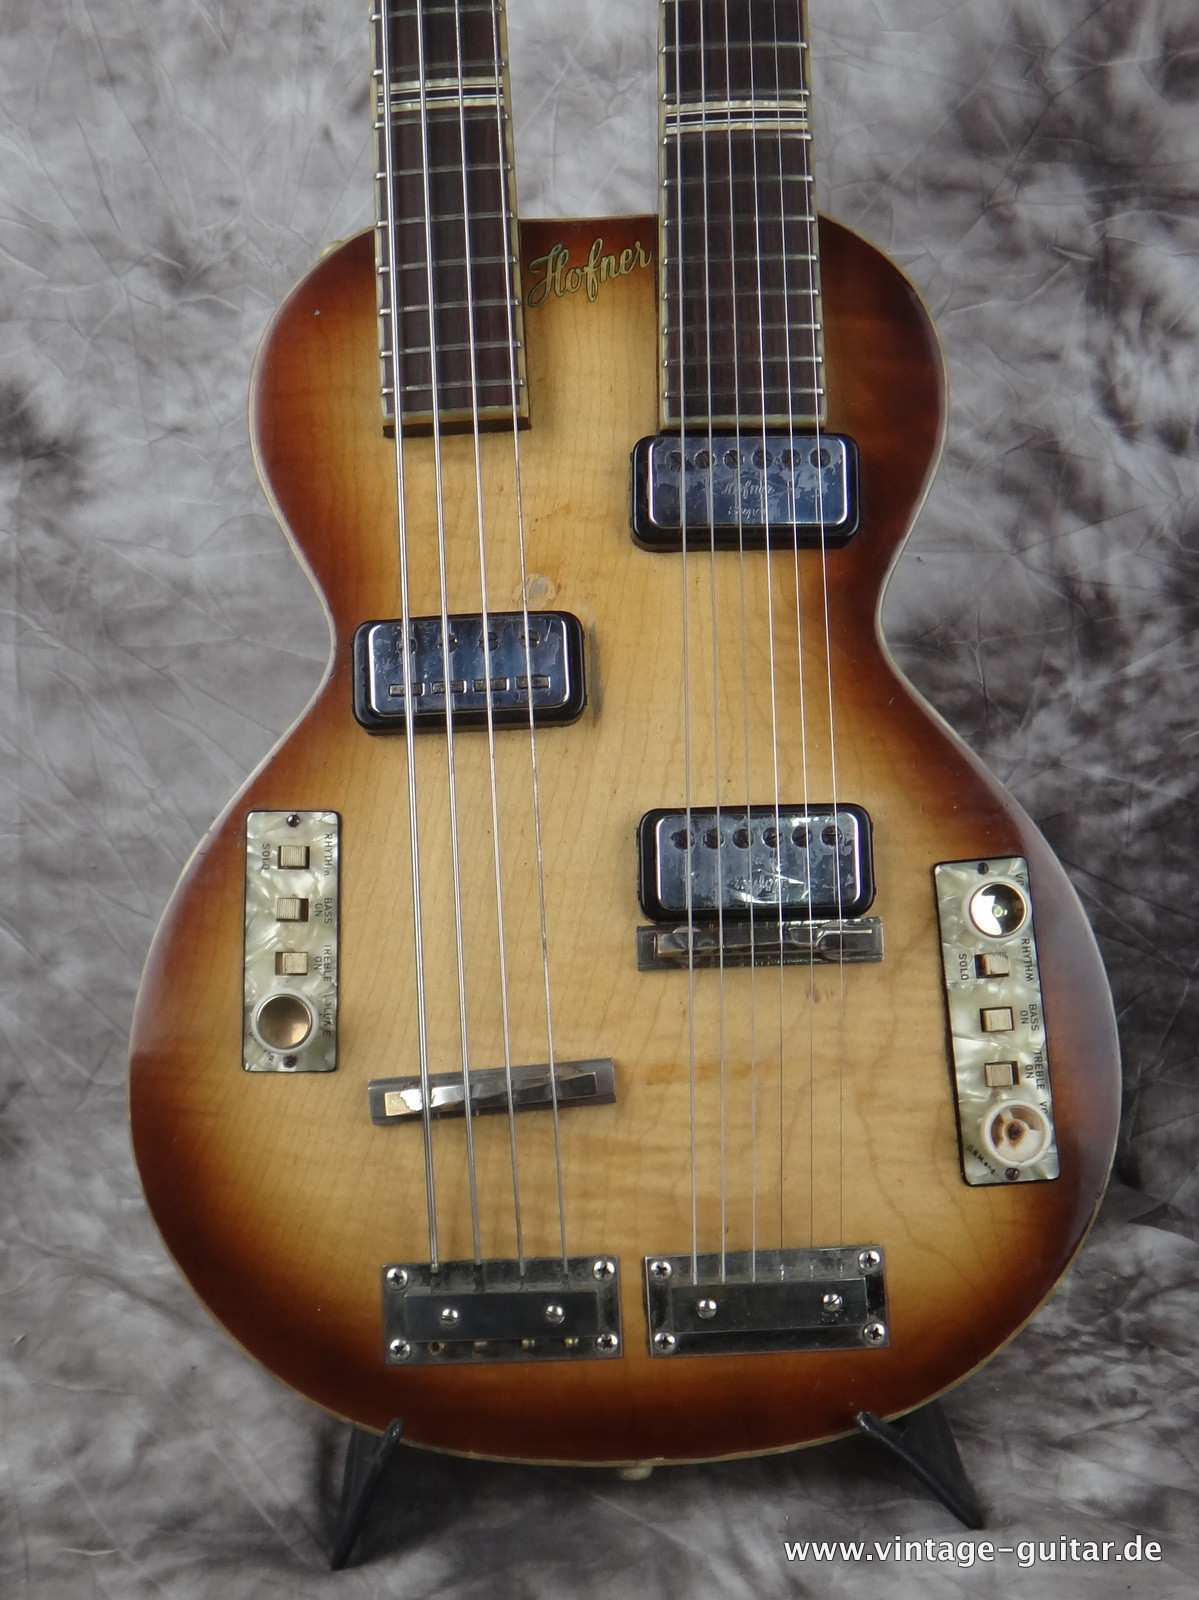 Hofner-Model-191-Double-Neck-Guitar-Bass-002.JPG